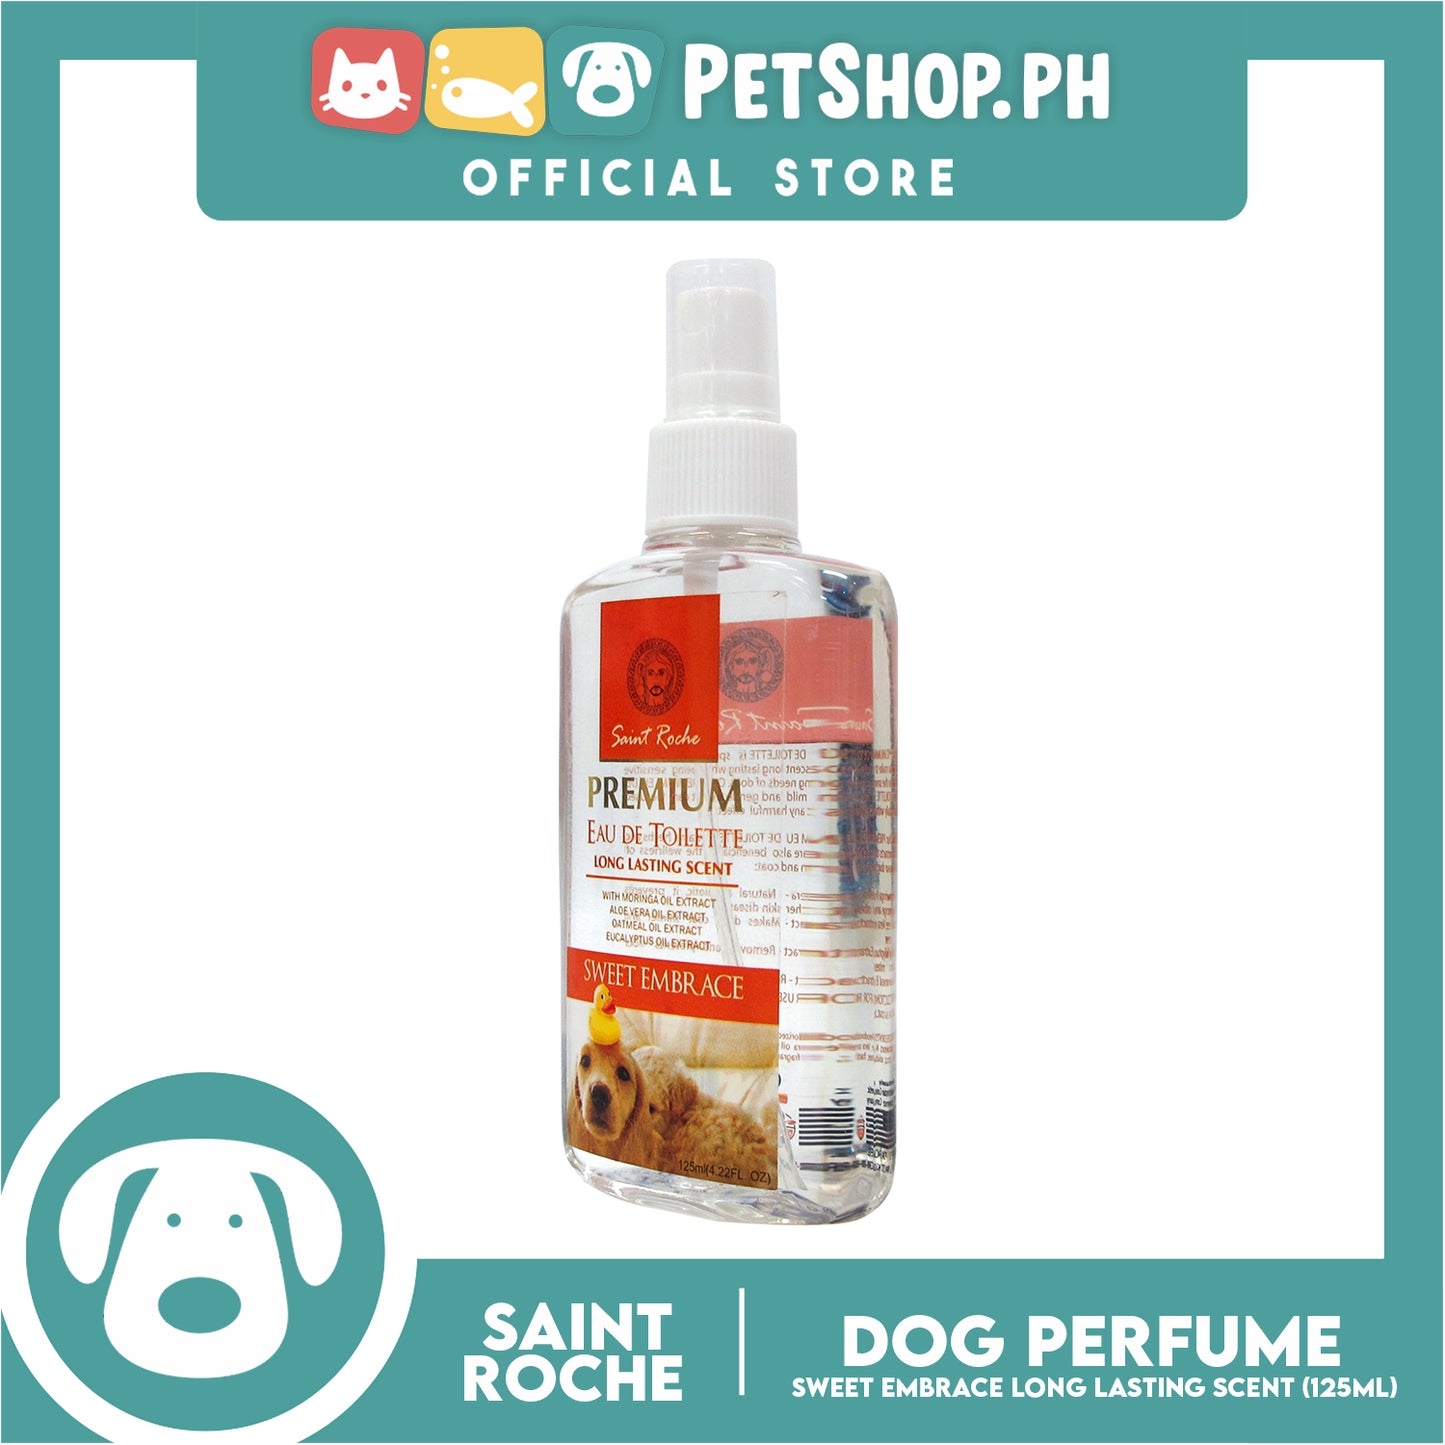 Saint Roche Premium Eu De Toilette Scent (Sweet Embrace) 125ml Perfume for Your Dogs